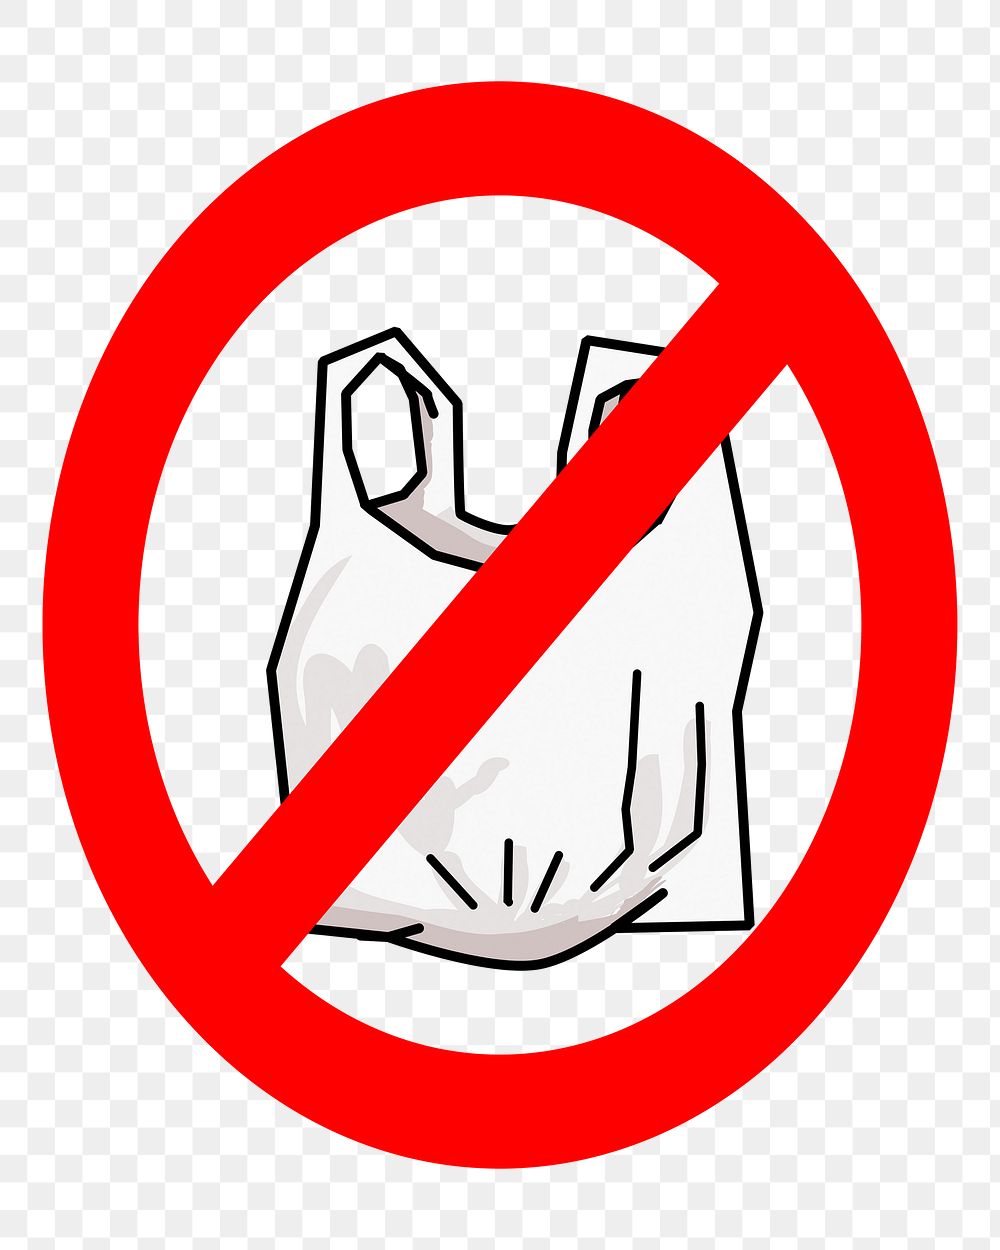 No plastic bag png sticker, transparent background. Free public domain CC0 image.